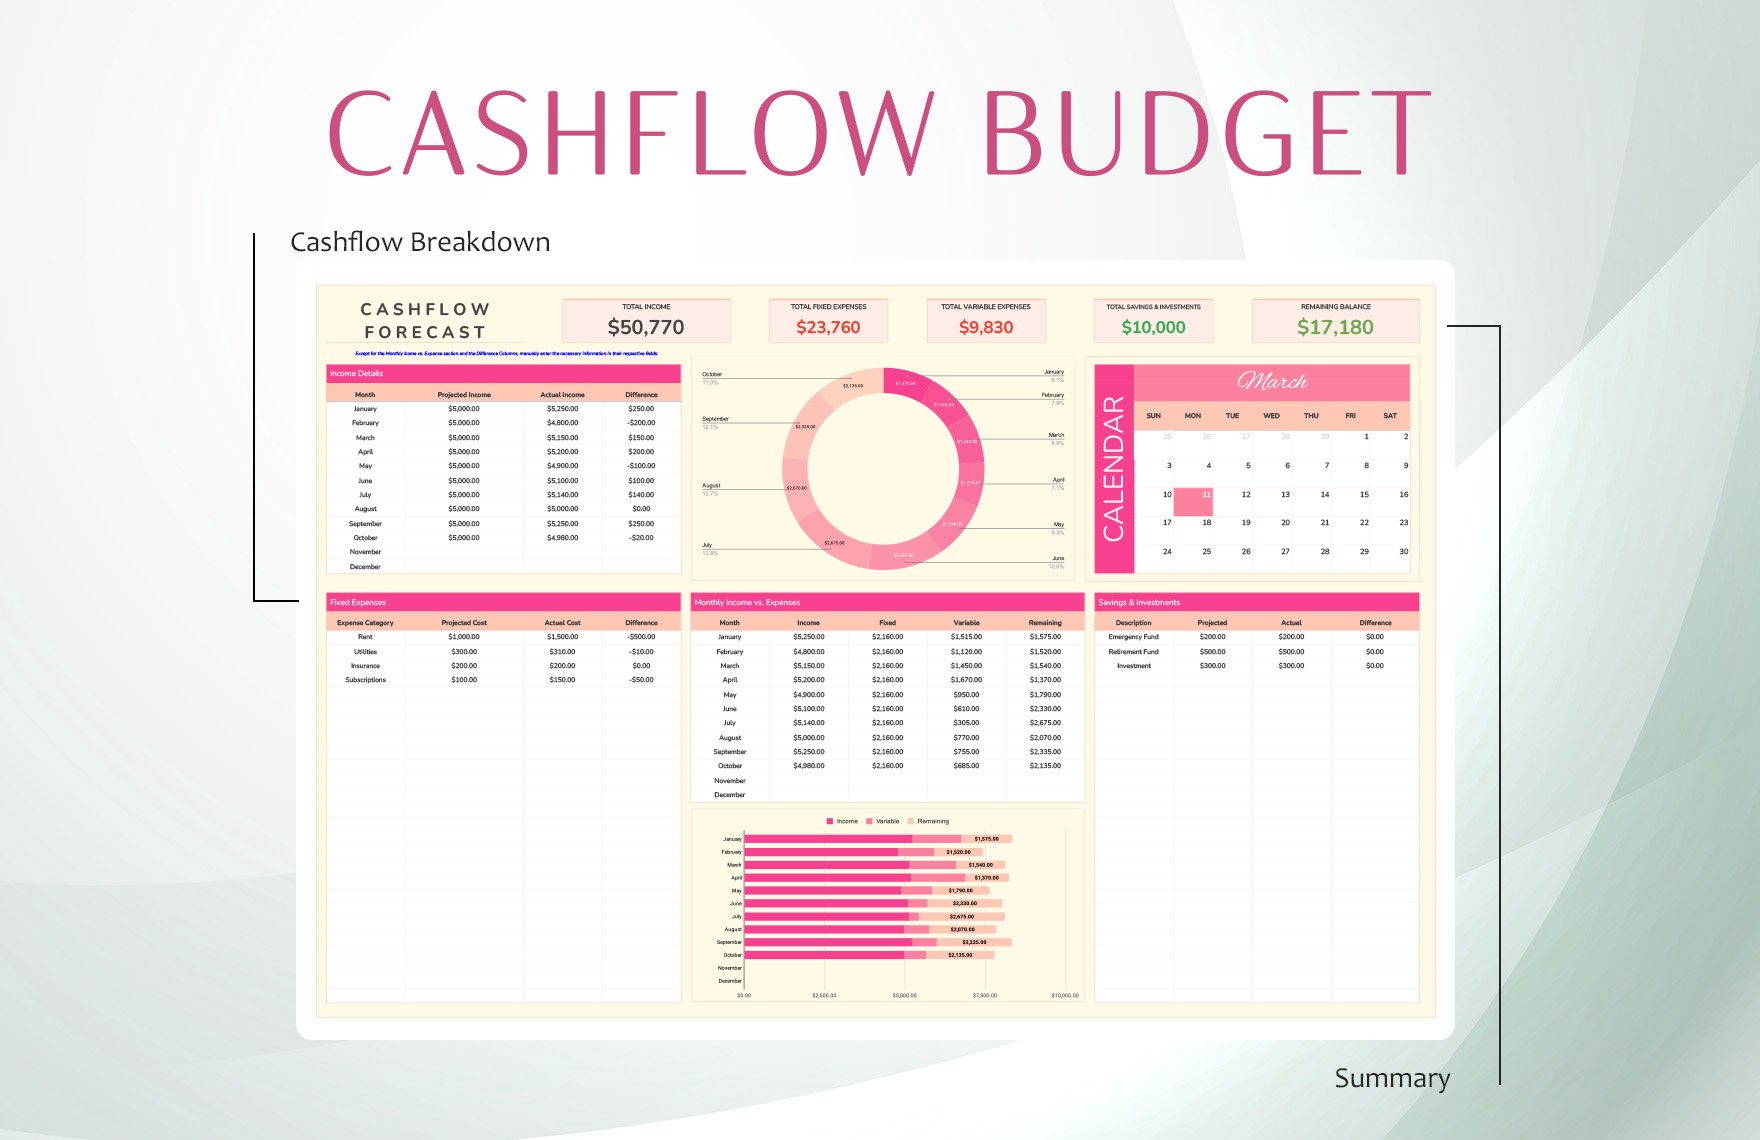 Cashflow Forecast Budget Template